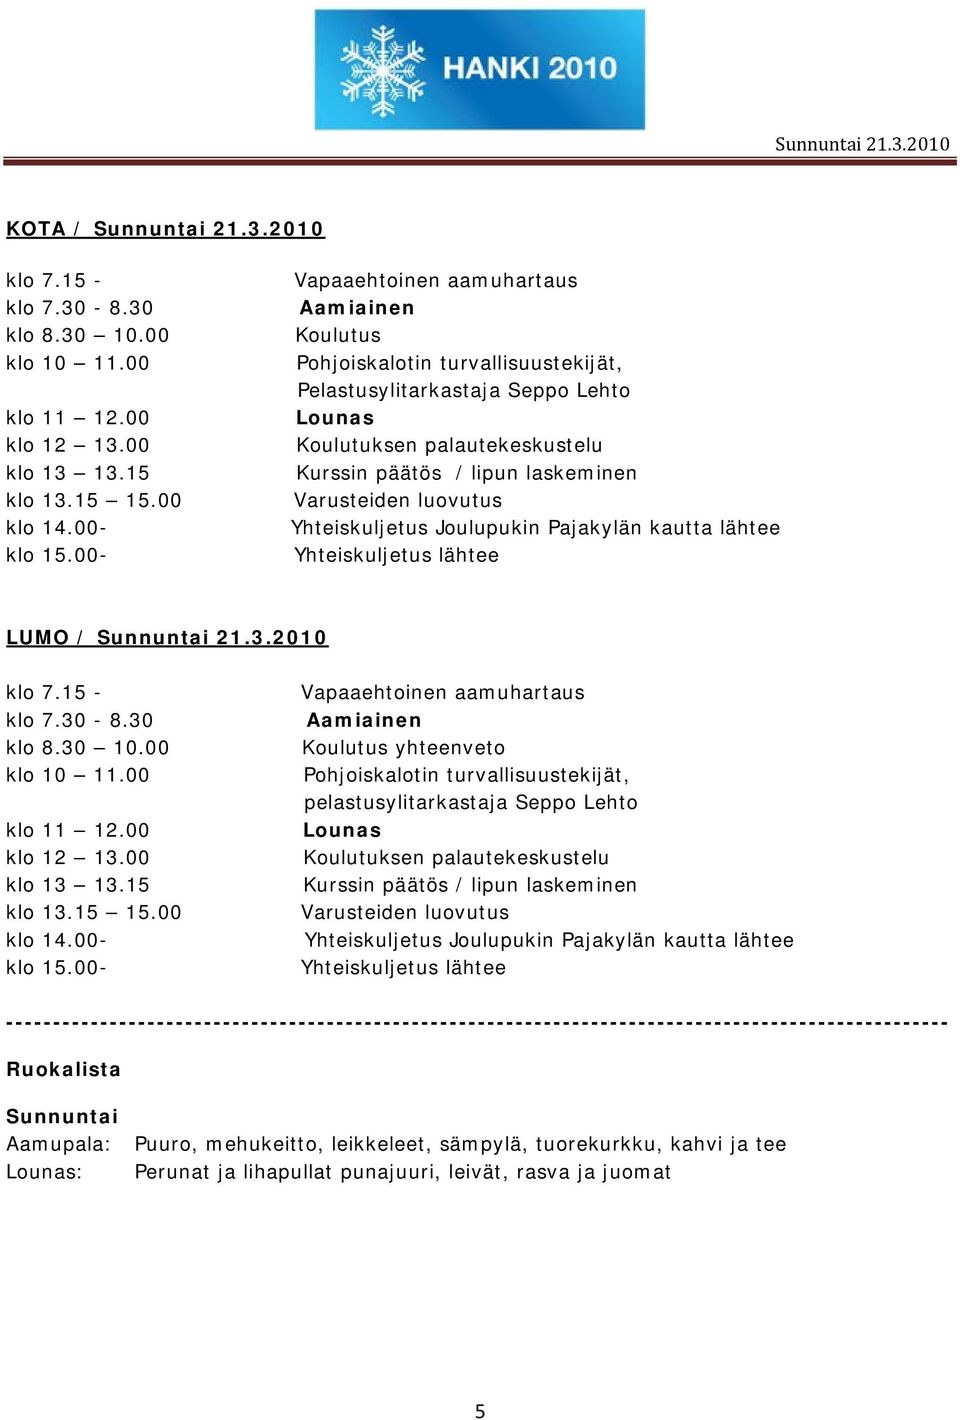 Varusteiden luovutus Yhteiskuljetus Joulupukin Pajakylän kautta lähtee Yhteiskuljetus lähtee LUMO / Sunnuntai 21.3.2010 klo 7.15 - klo 7.30-8.30 klo 8.30 10.00 klo 10 11.00 klo 11 12.00 klo 12 13.